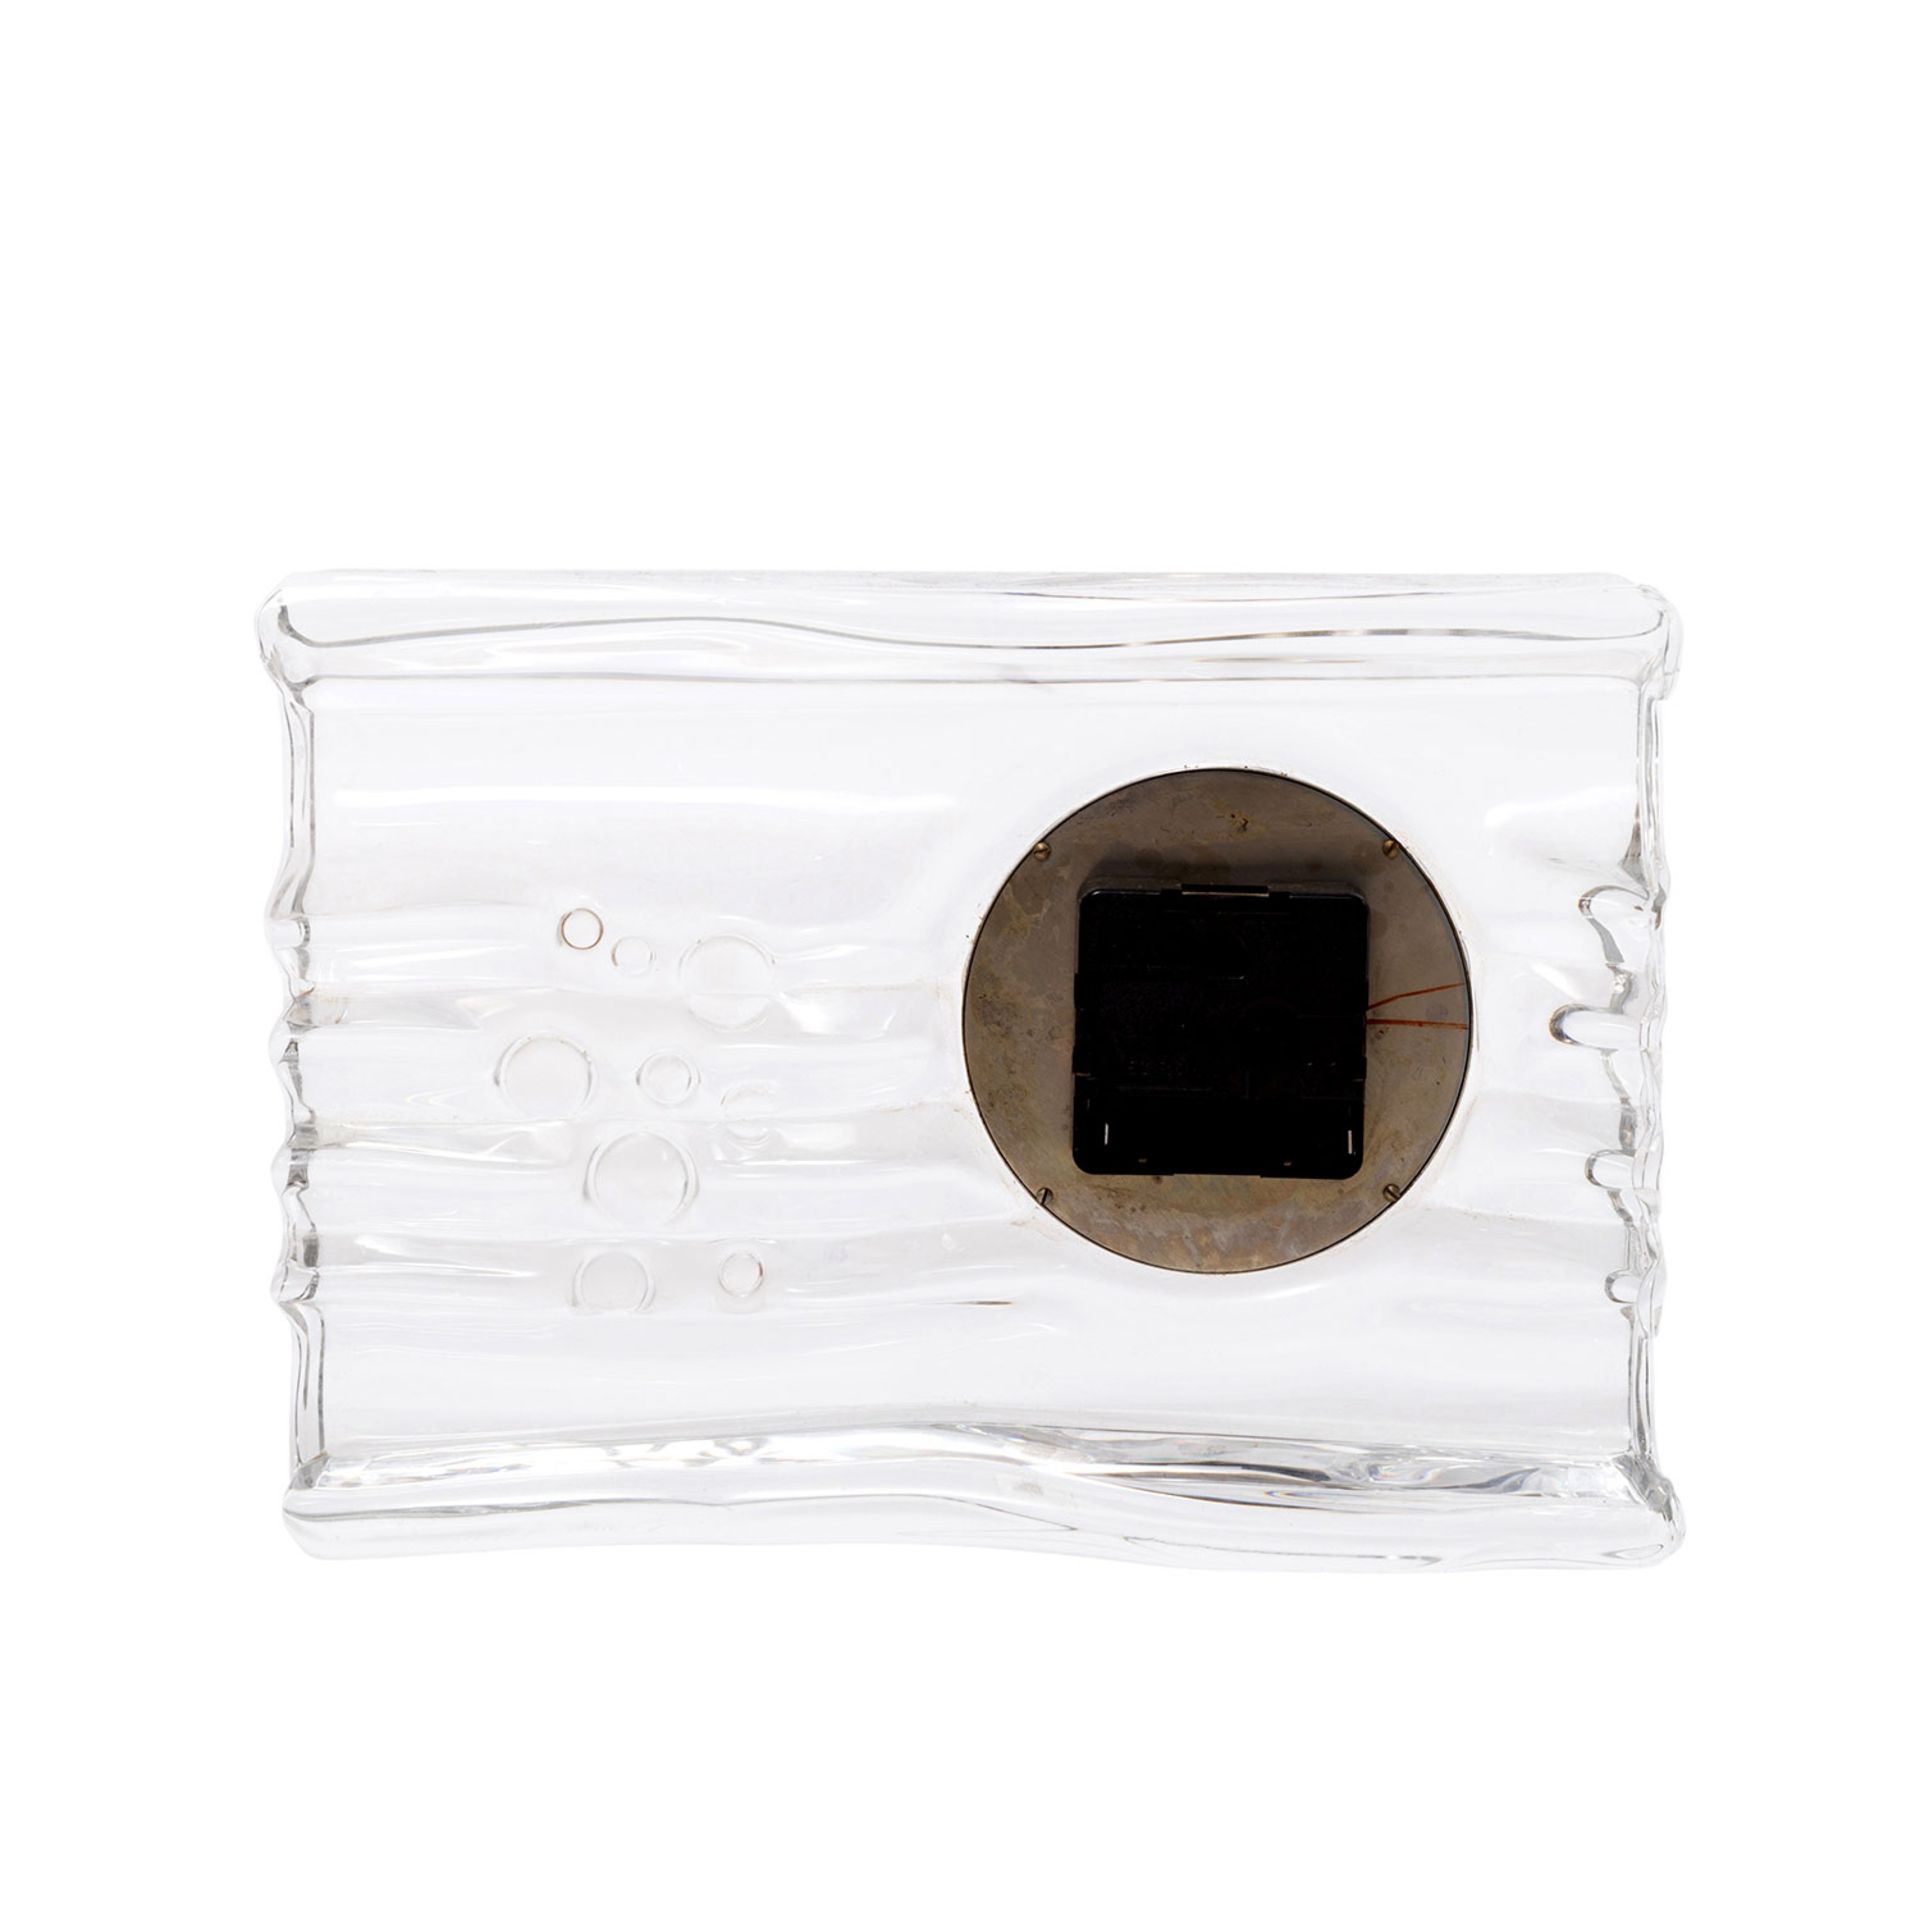 DAUM Quartz-Uhr, 20.Jh.quadratischer Glaskorpus mit eingesetzter Uhr, batteriebetrieben, - Bild 4 aus 4